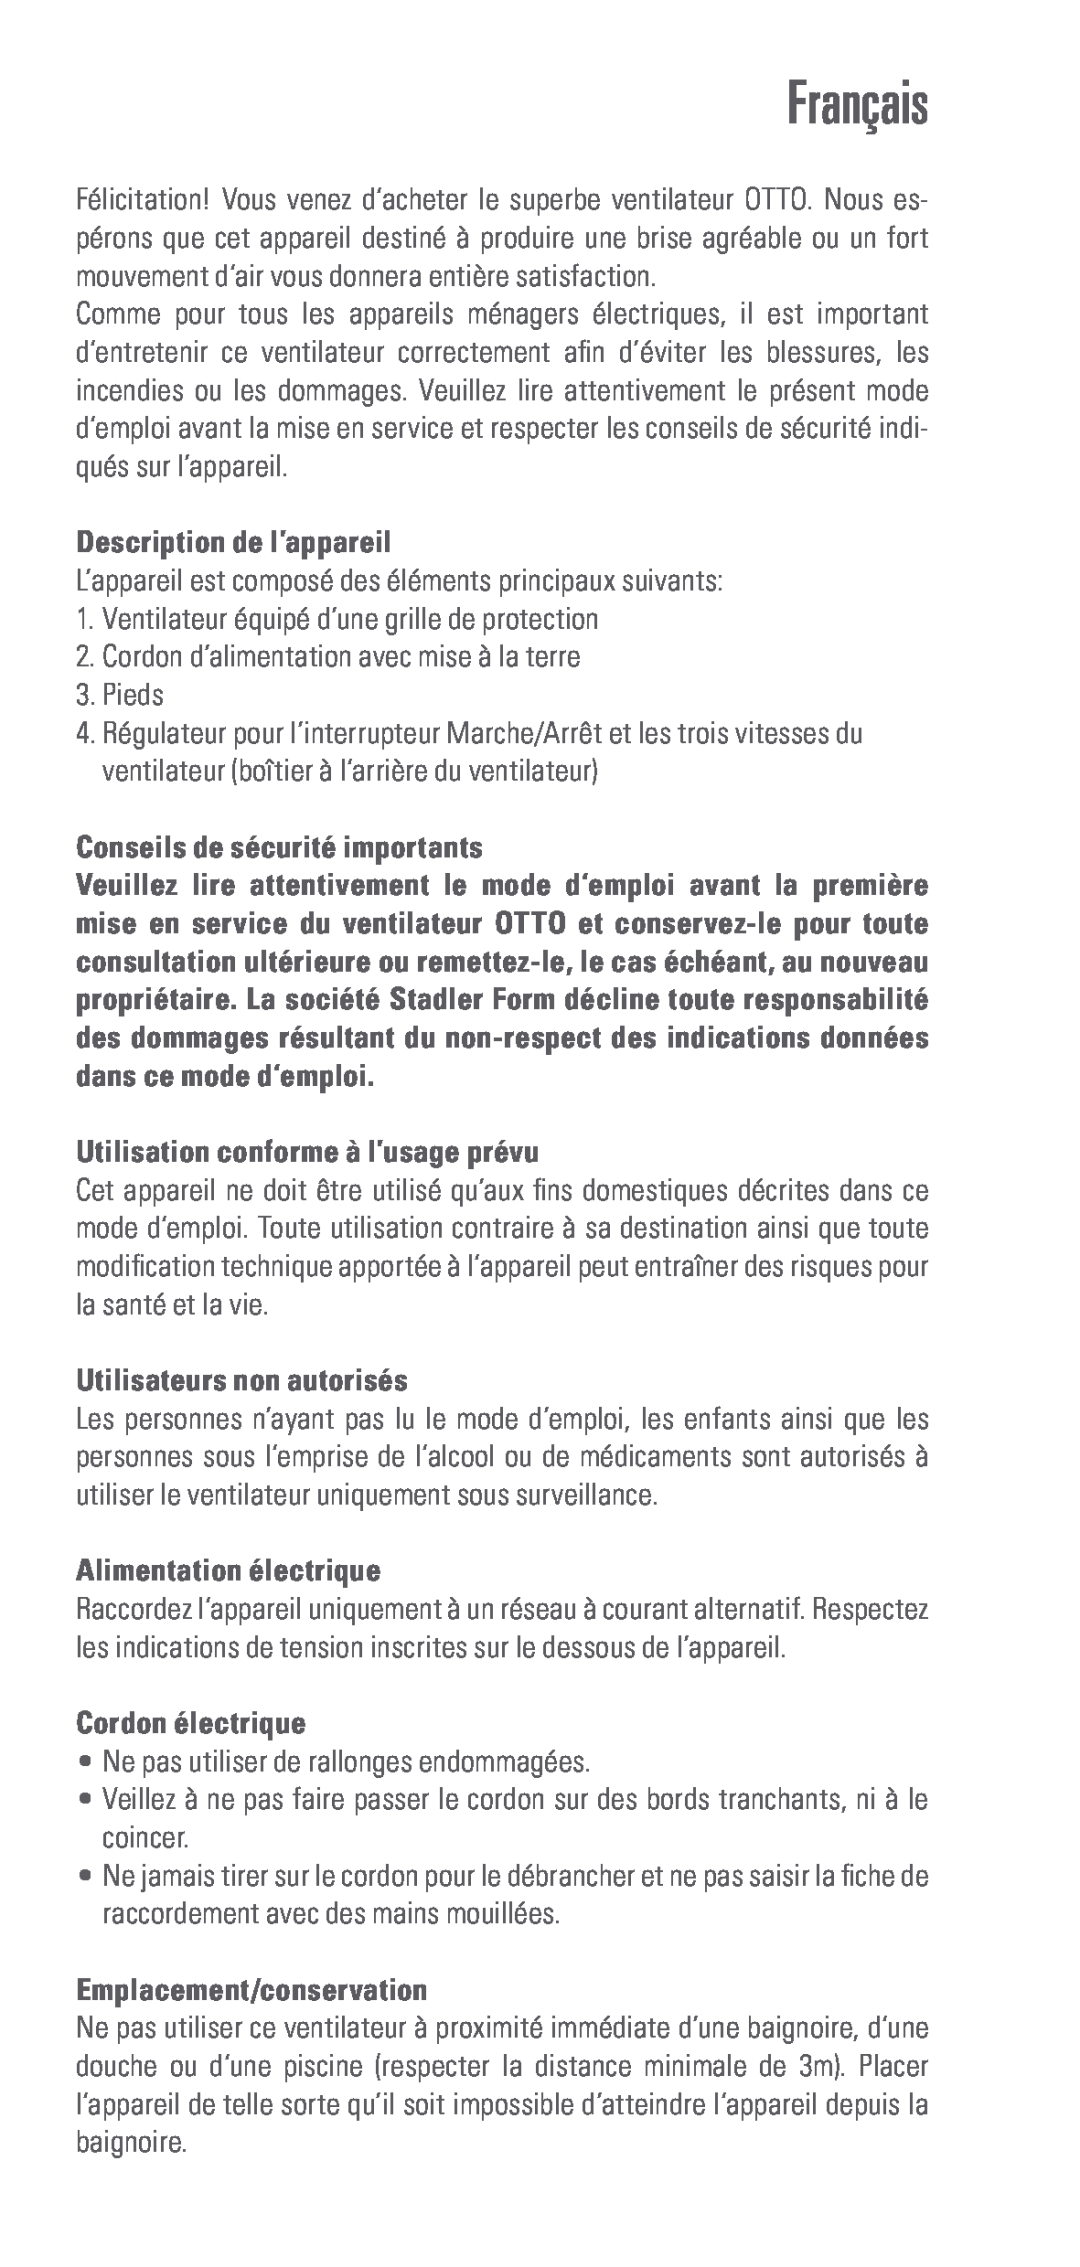 Swizz Style Otto manual Français, Description de l’appareil, Conseils de sécurité importants, Utilisateurs non autorisés 